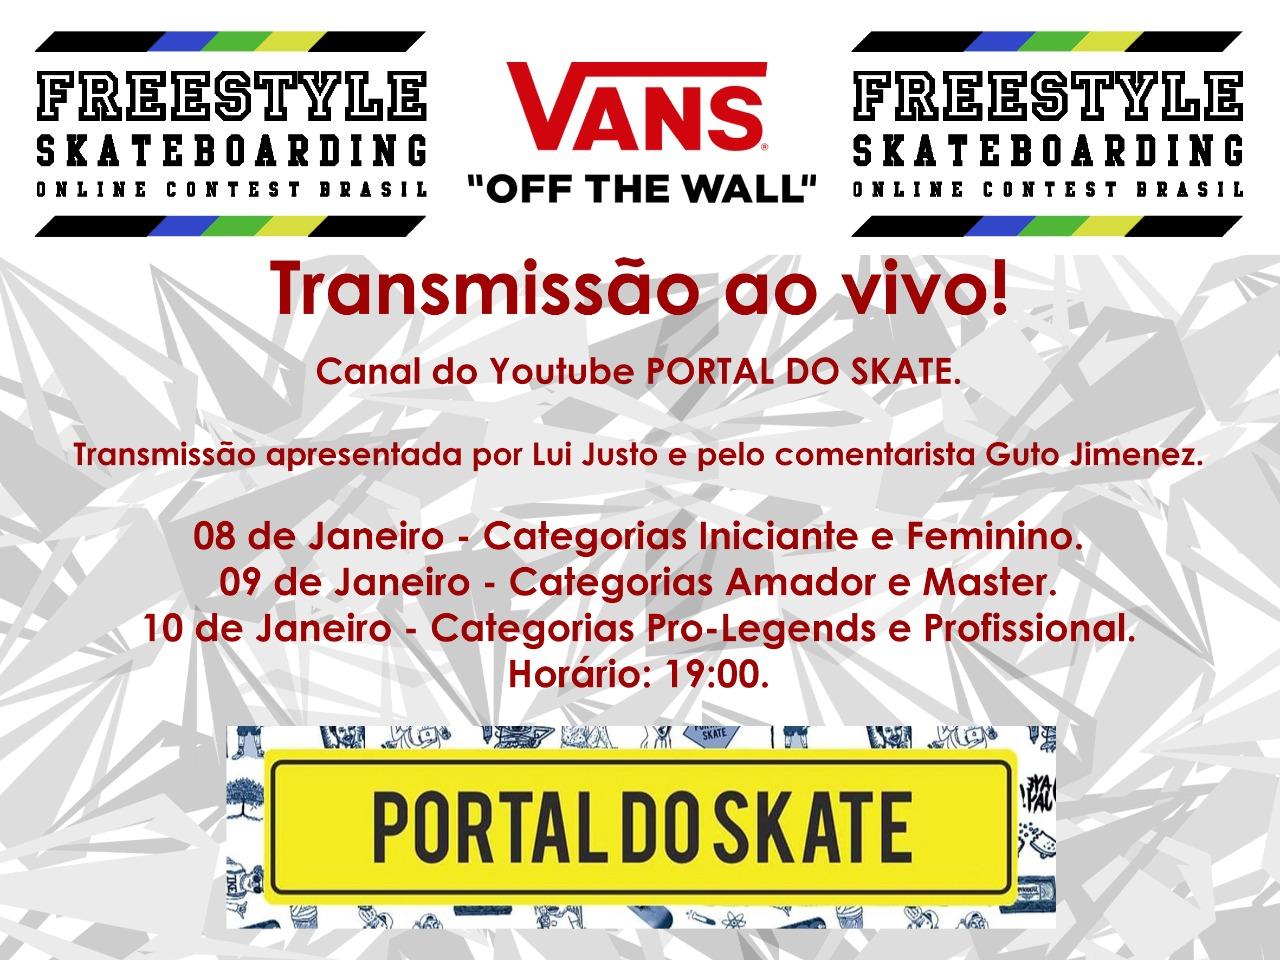 Freestyle Skateboarding Online Contest Brasil acontece neste fim de semana com transmissão do Canal Portal do Skate